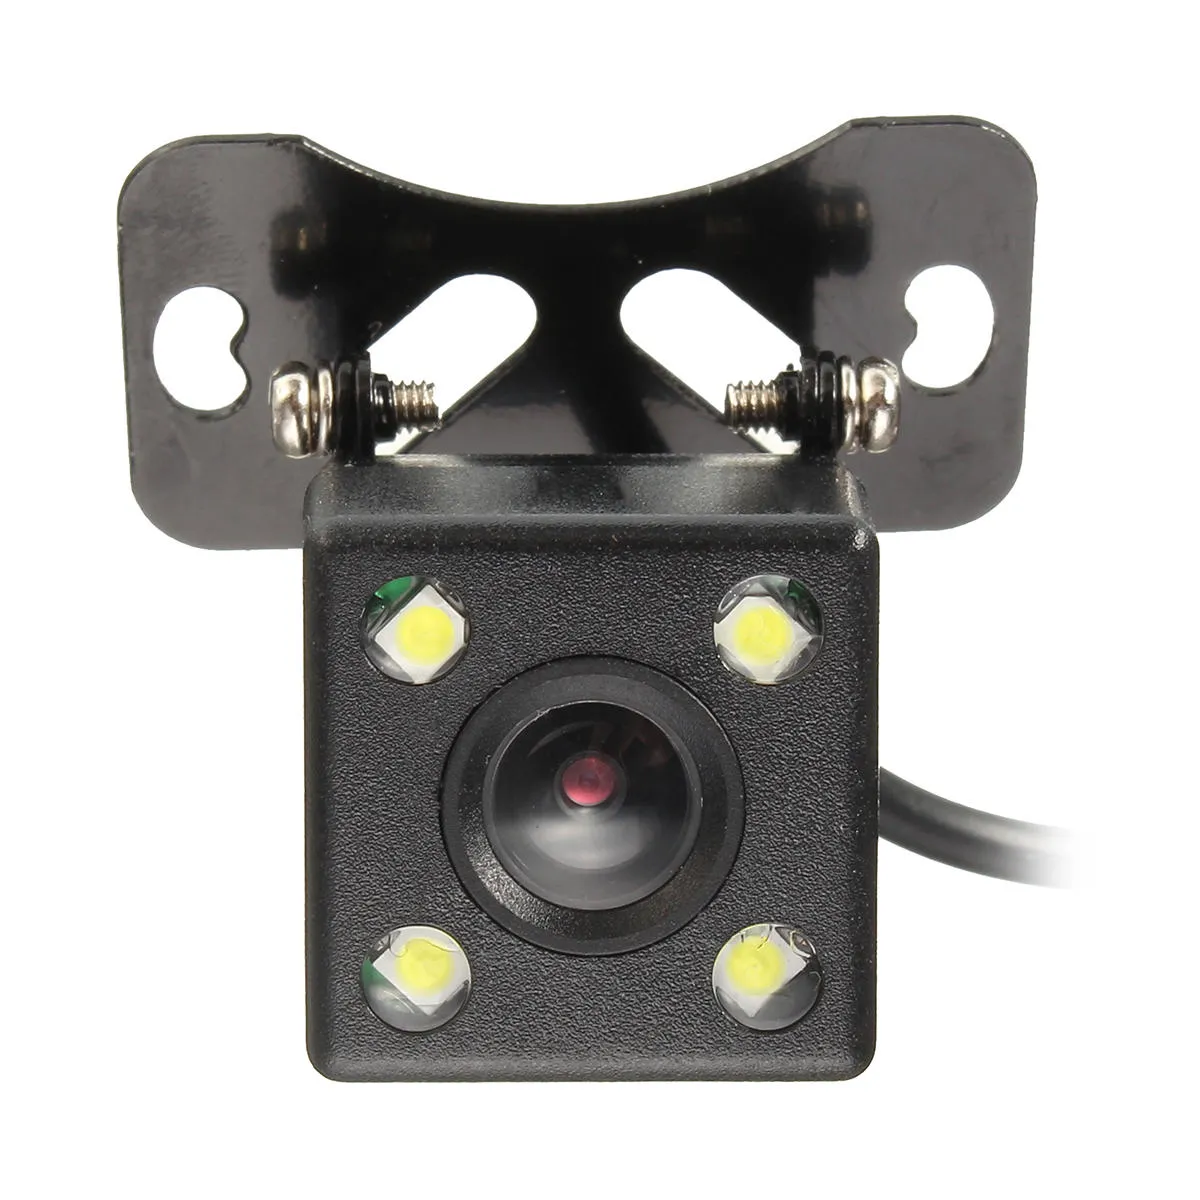 Inverso dell'automobile telecamera posteriore di parcheggio del sensore View LED impermeabile 170 gradi di visione notturna HD